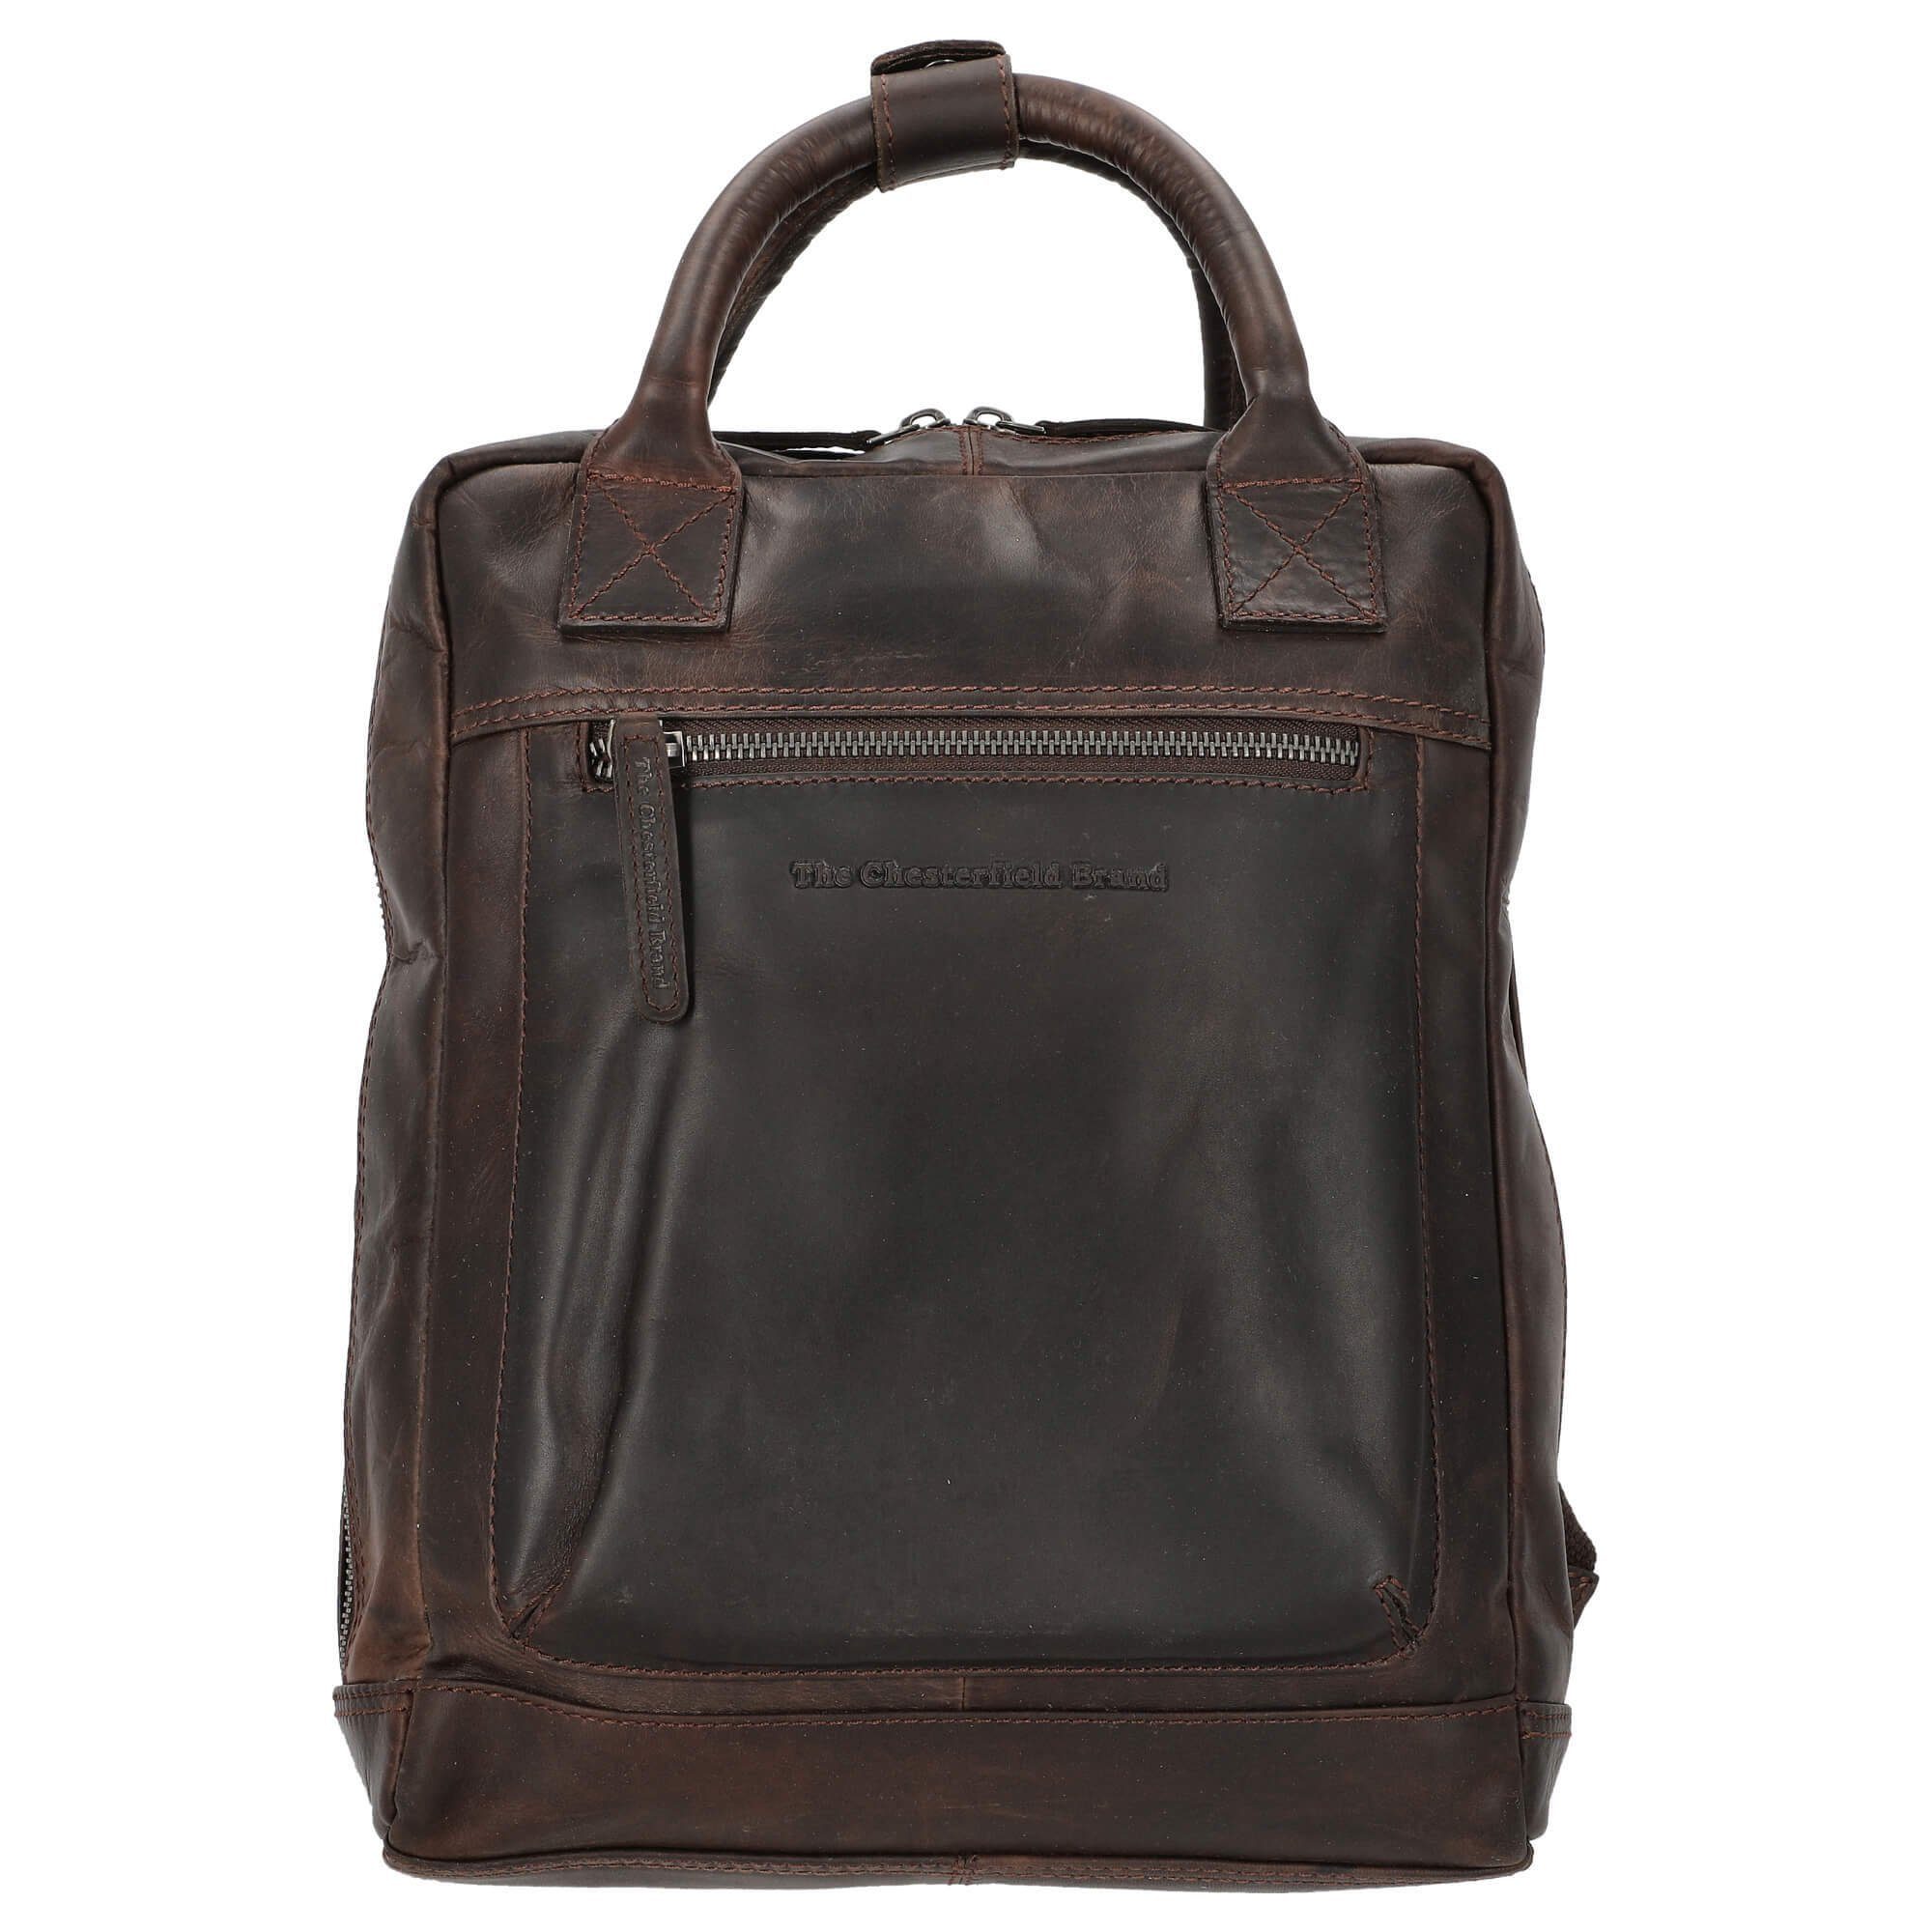 The Chesterfield Brand Laptoprucksack Lincoln - Rucksack 13" 32 cm brown | Businesstaschen